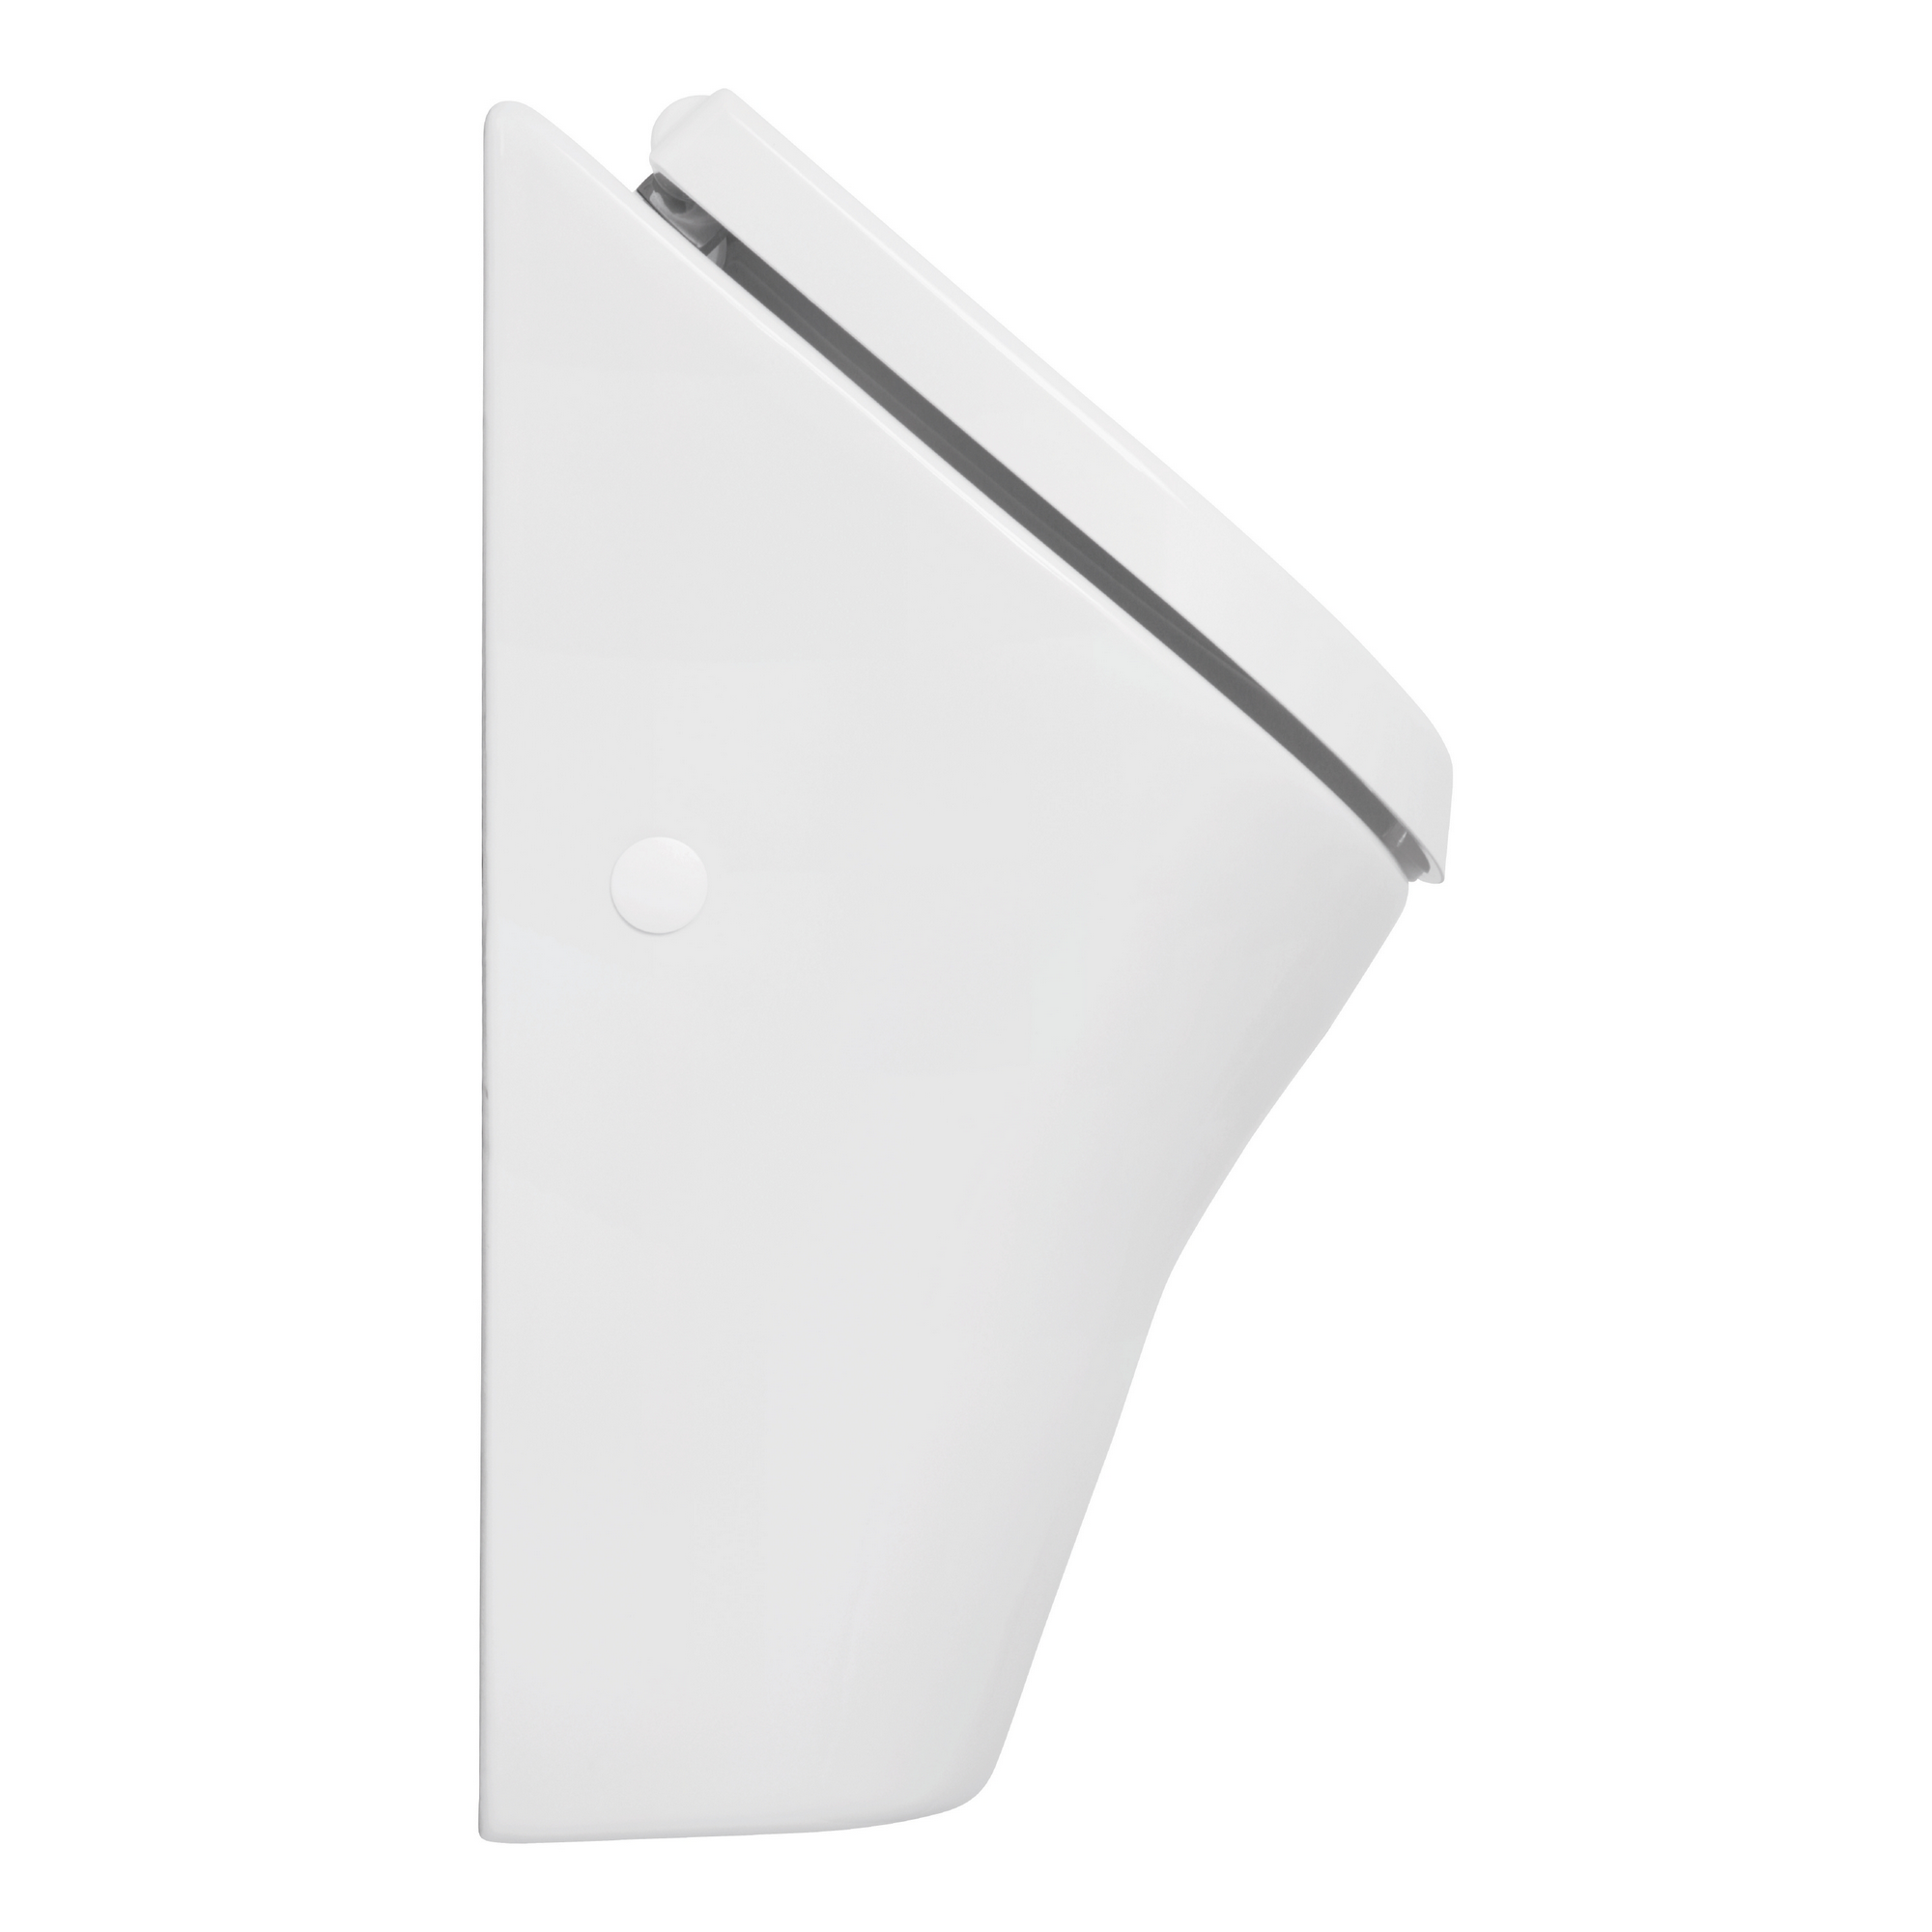 Urinal-Set 'Ridaro' weiß 31 x 49 x 28 cm, mit Deckel + product picture